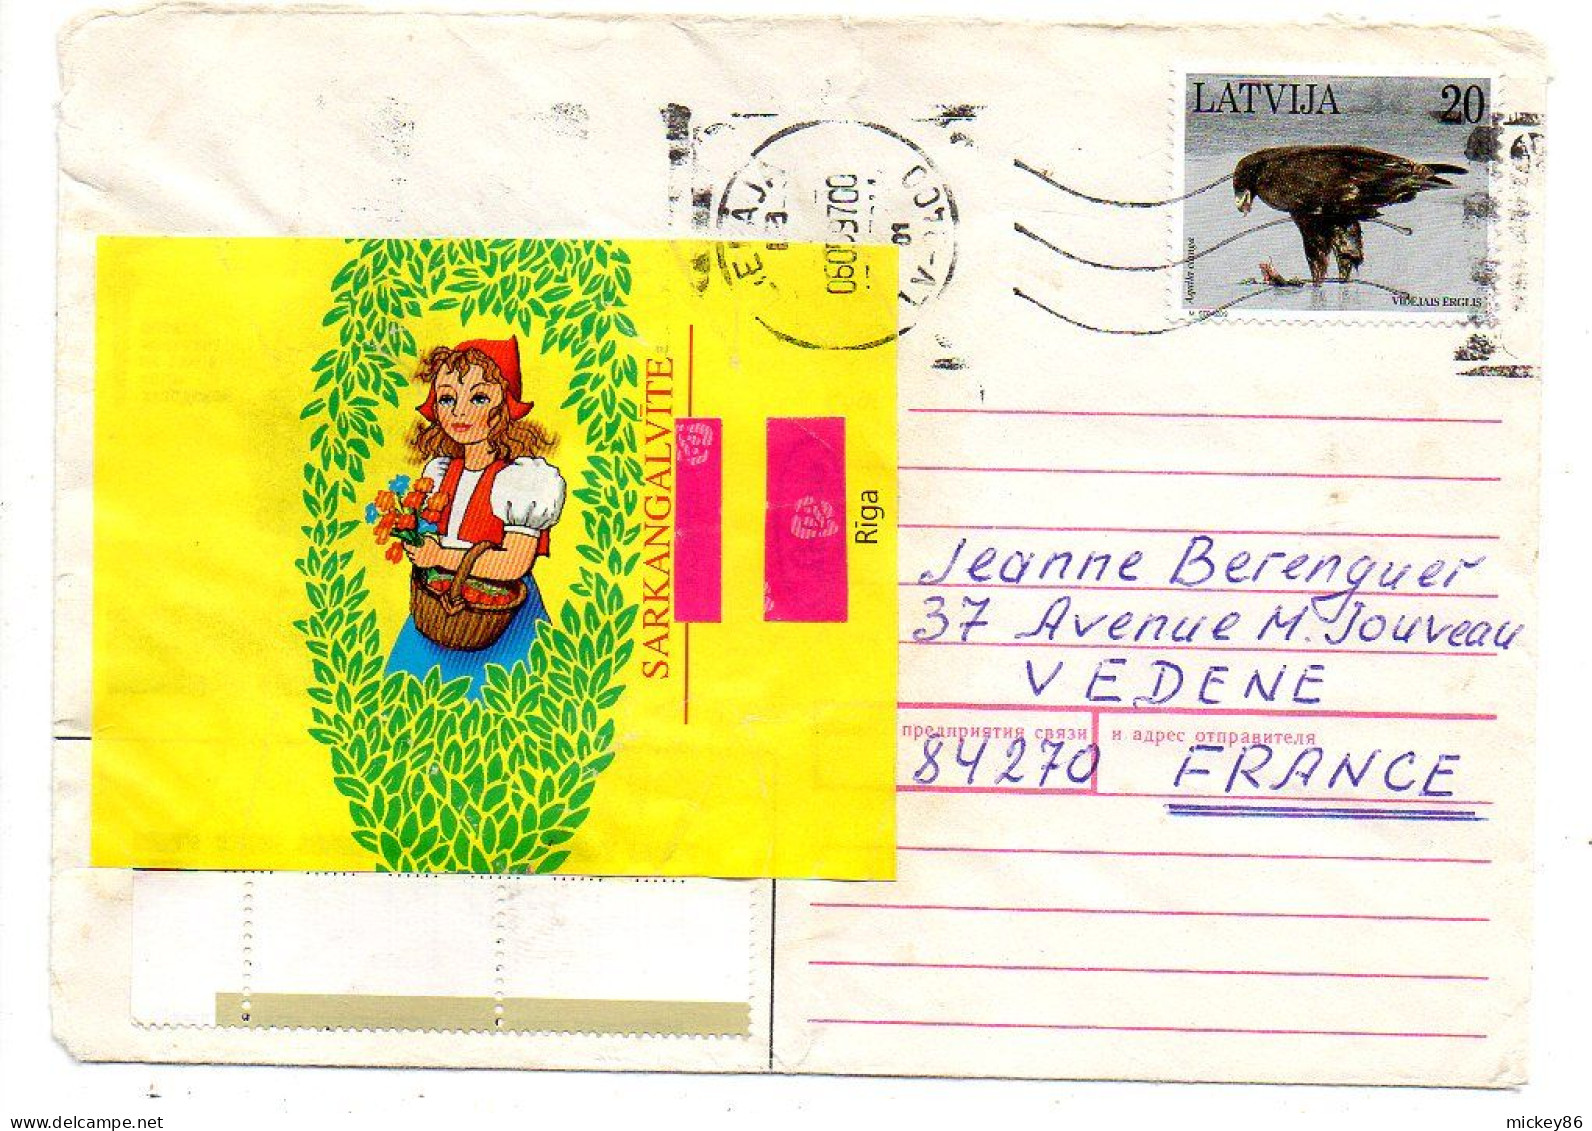 Lettonie --1997--LIEPAJA  Pour VEDENE-84 (France).enveloppe Illustrée..... Timbre Rapace  ..cachet - Latvia